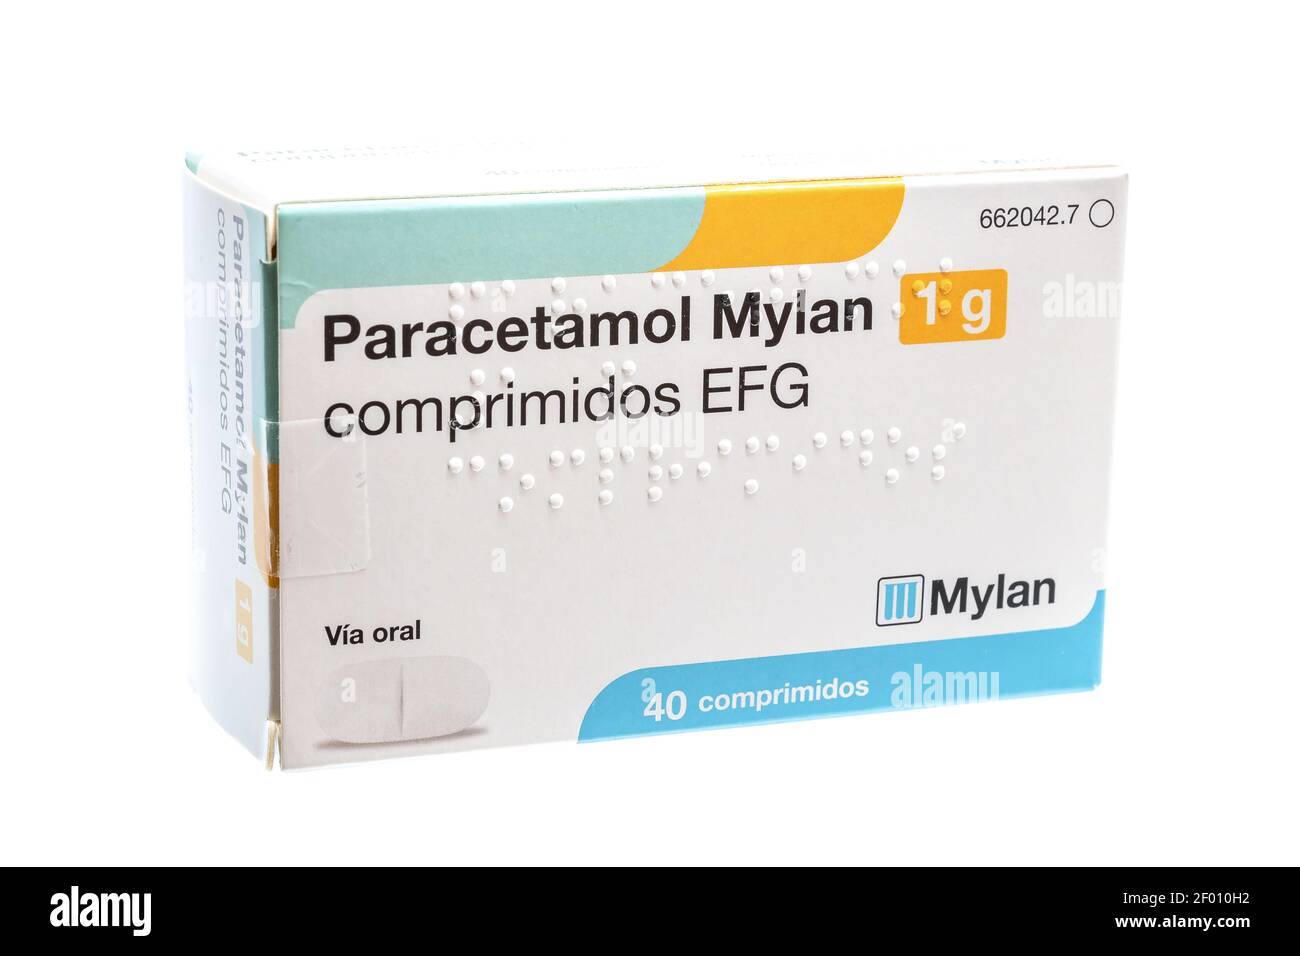 Huelva, Espagne - 6 mars 2021 : boîte espagnole de Paracetamol Mylan. Aussi connu sous le nom d'acétaminophène, est un médicament utilisé pour traiter la douleur et la fièvre. Il est typi Banque D'Images